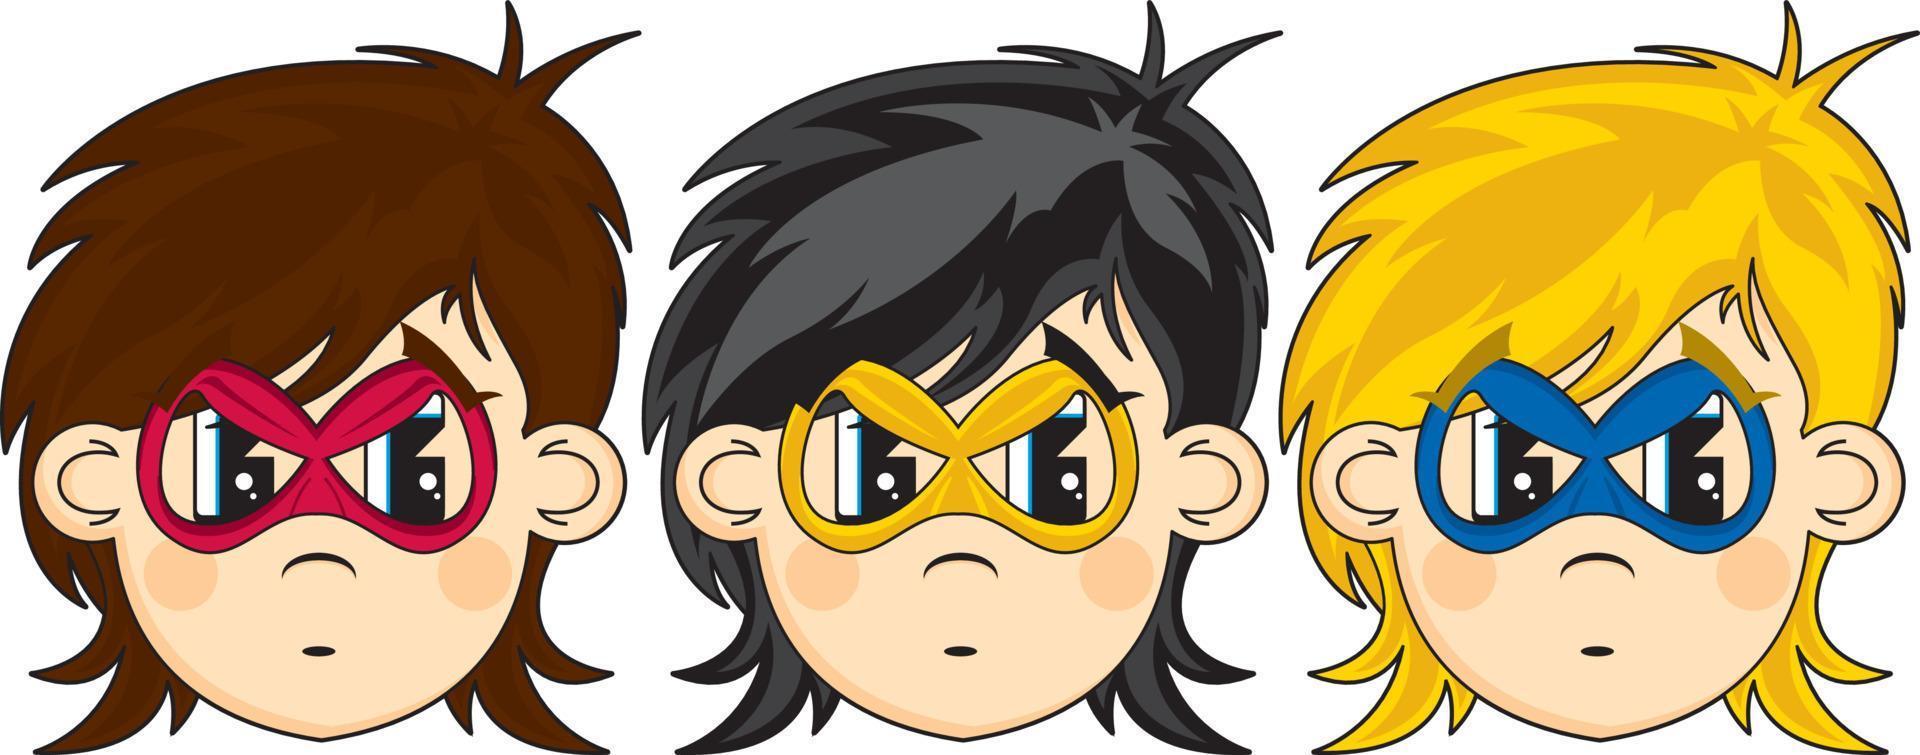 dibujos animados heroico superhéroe cabezas vector